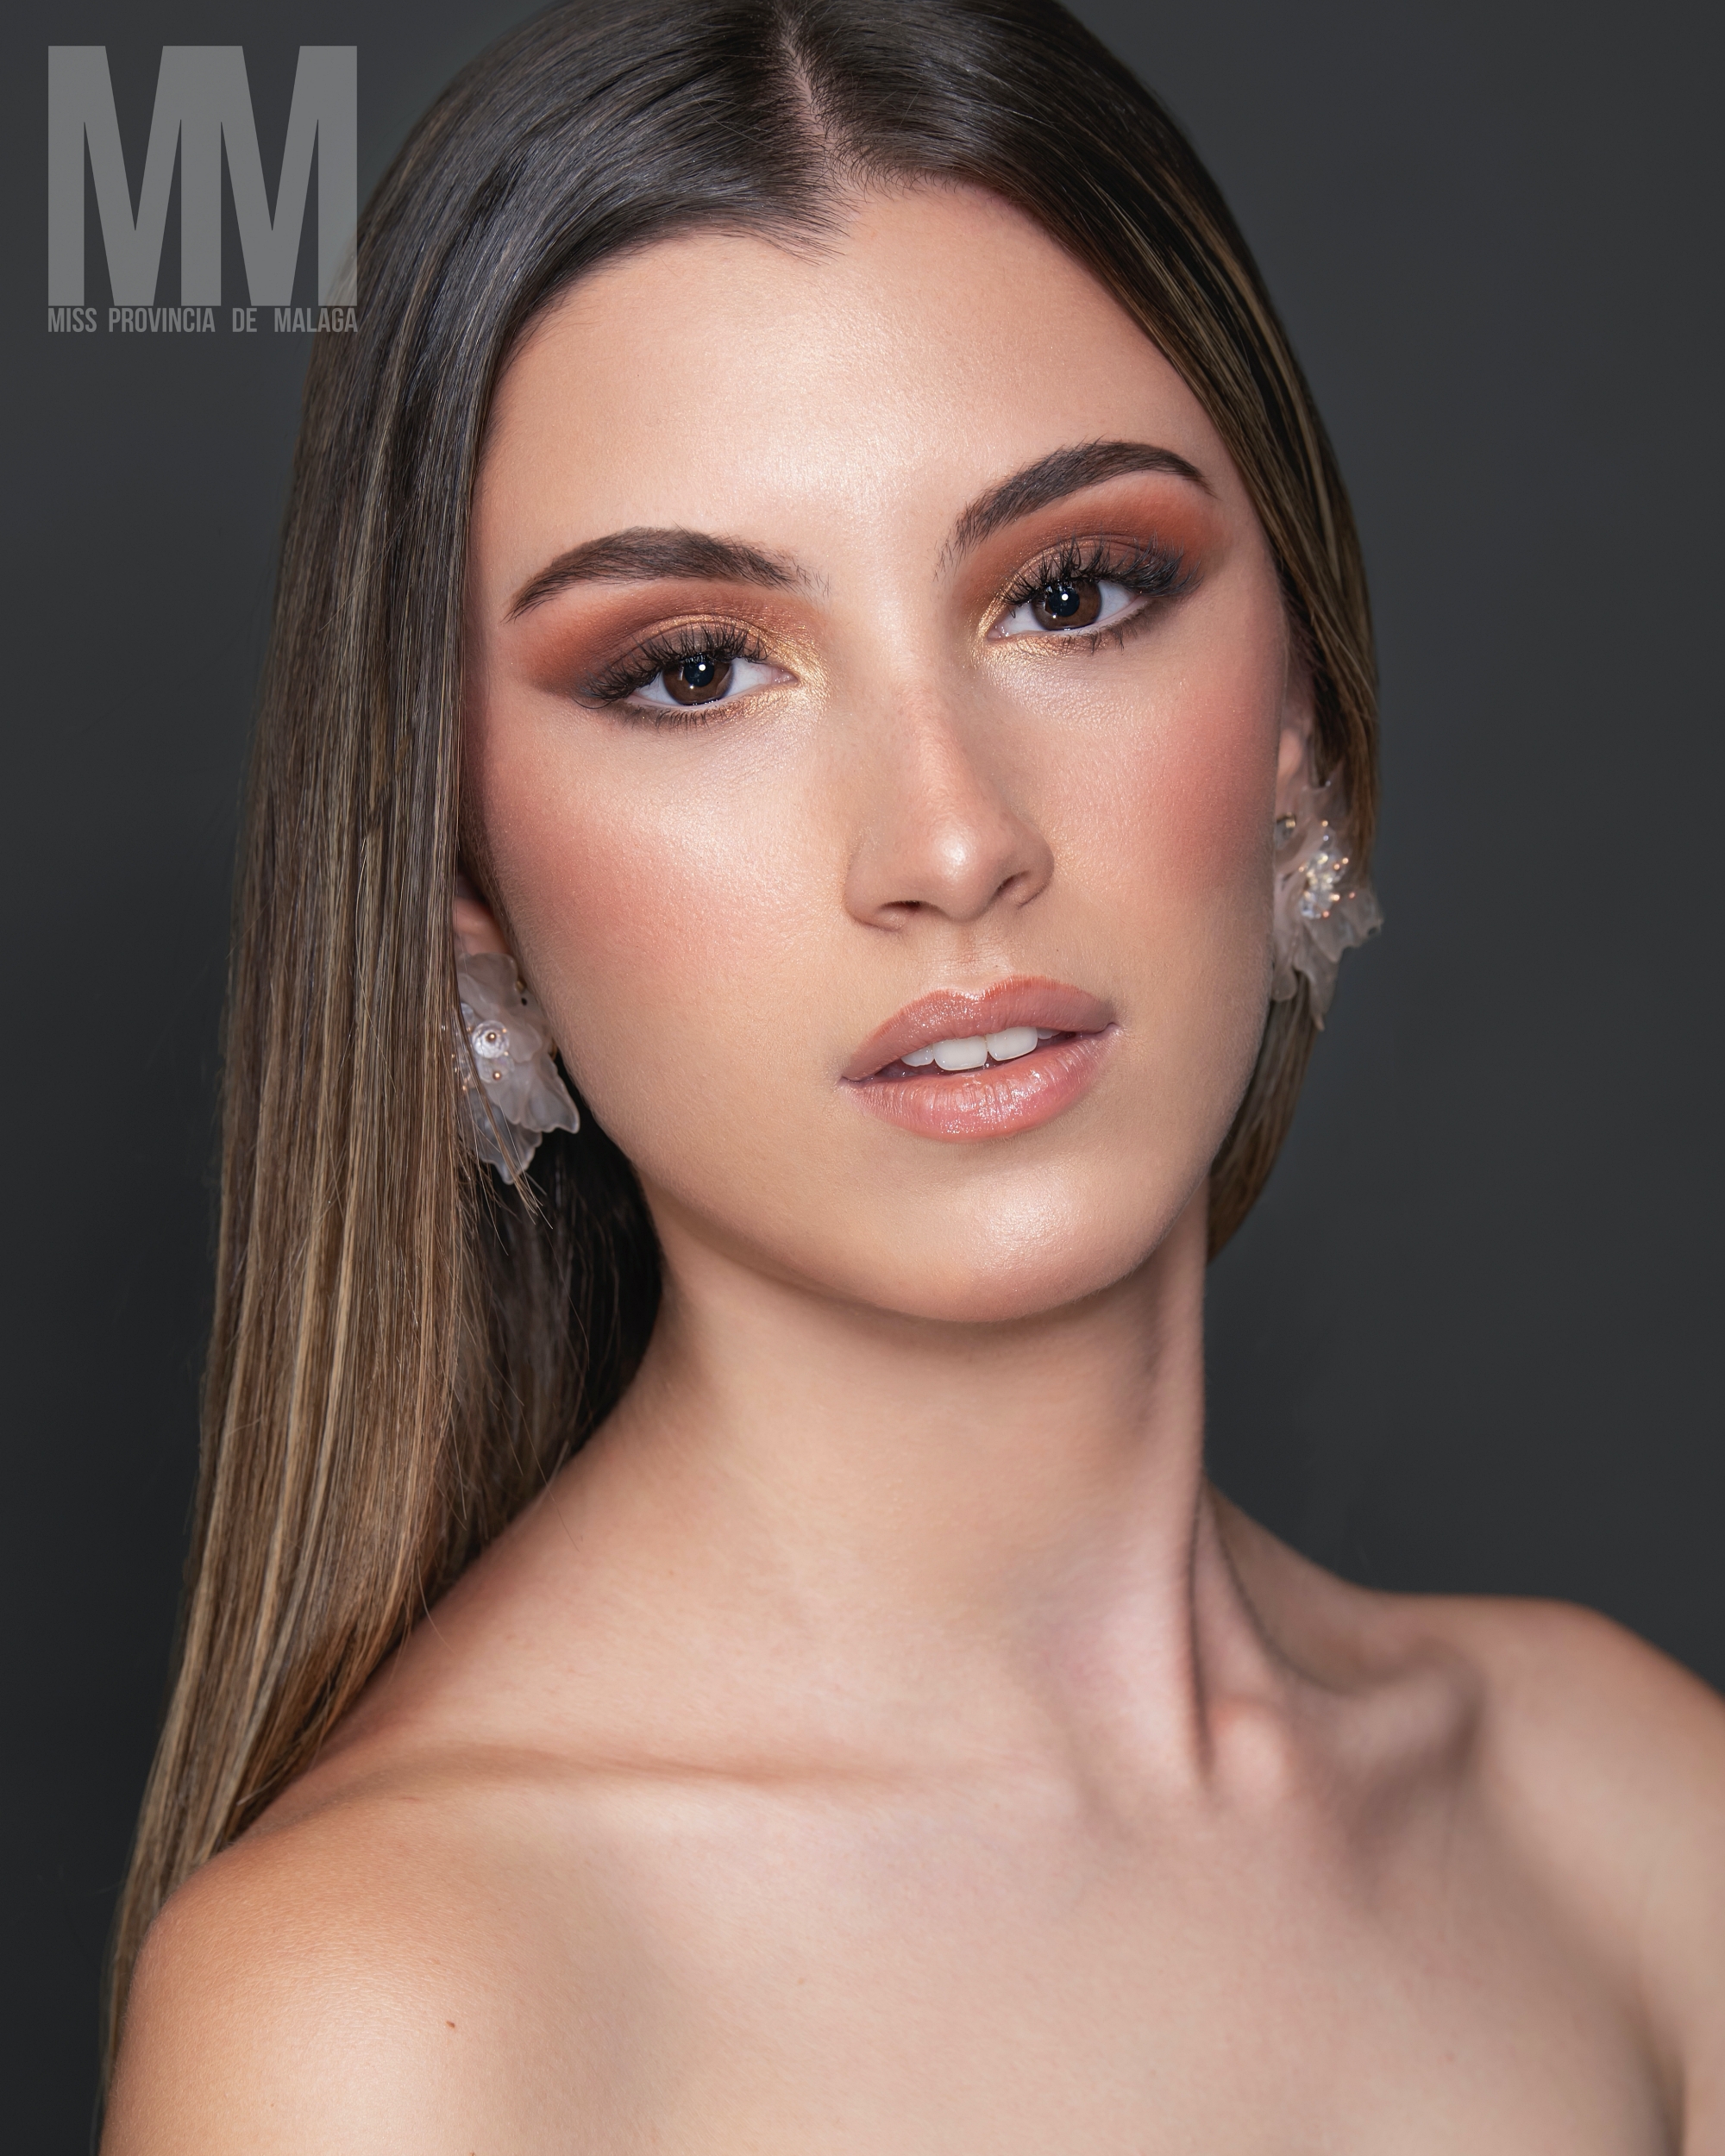 Miss Provincia de Malaga 2022 MISS ALHAURIN DE LA TORRE Laura Gonzalez 1